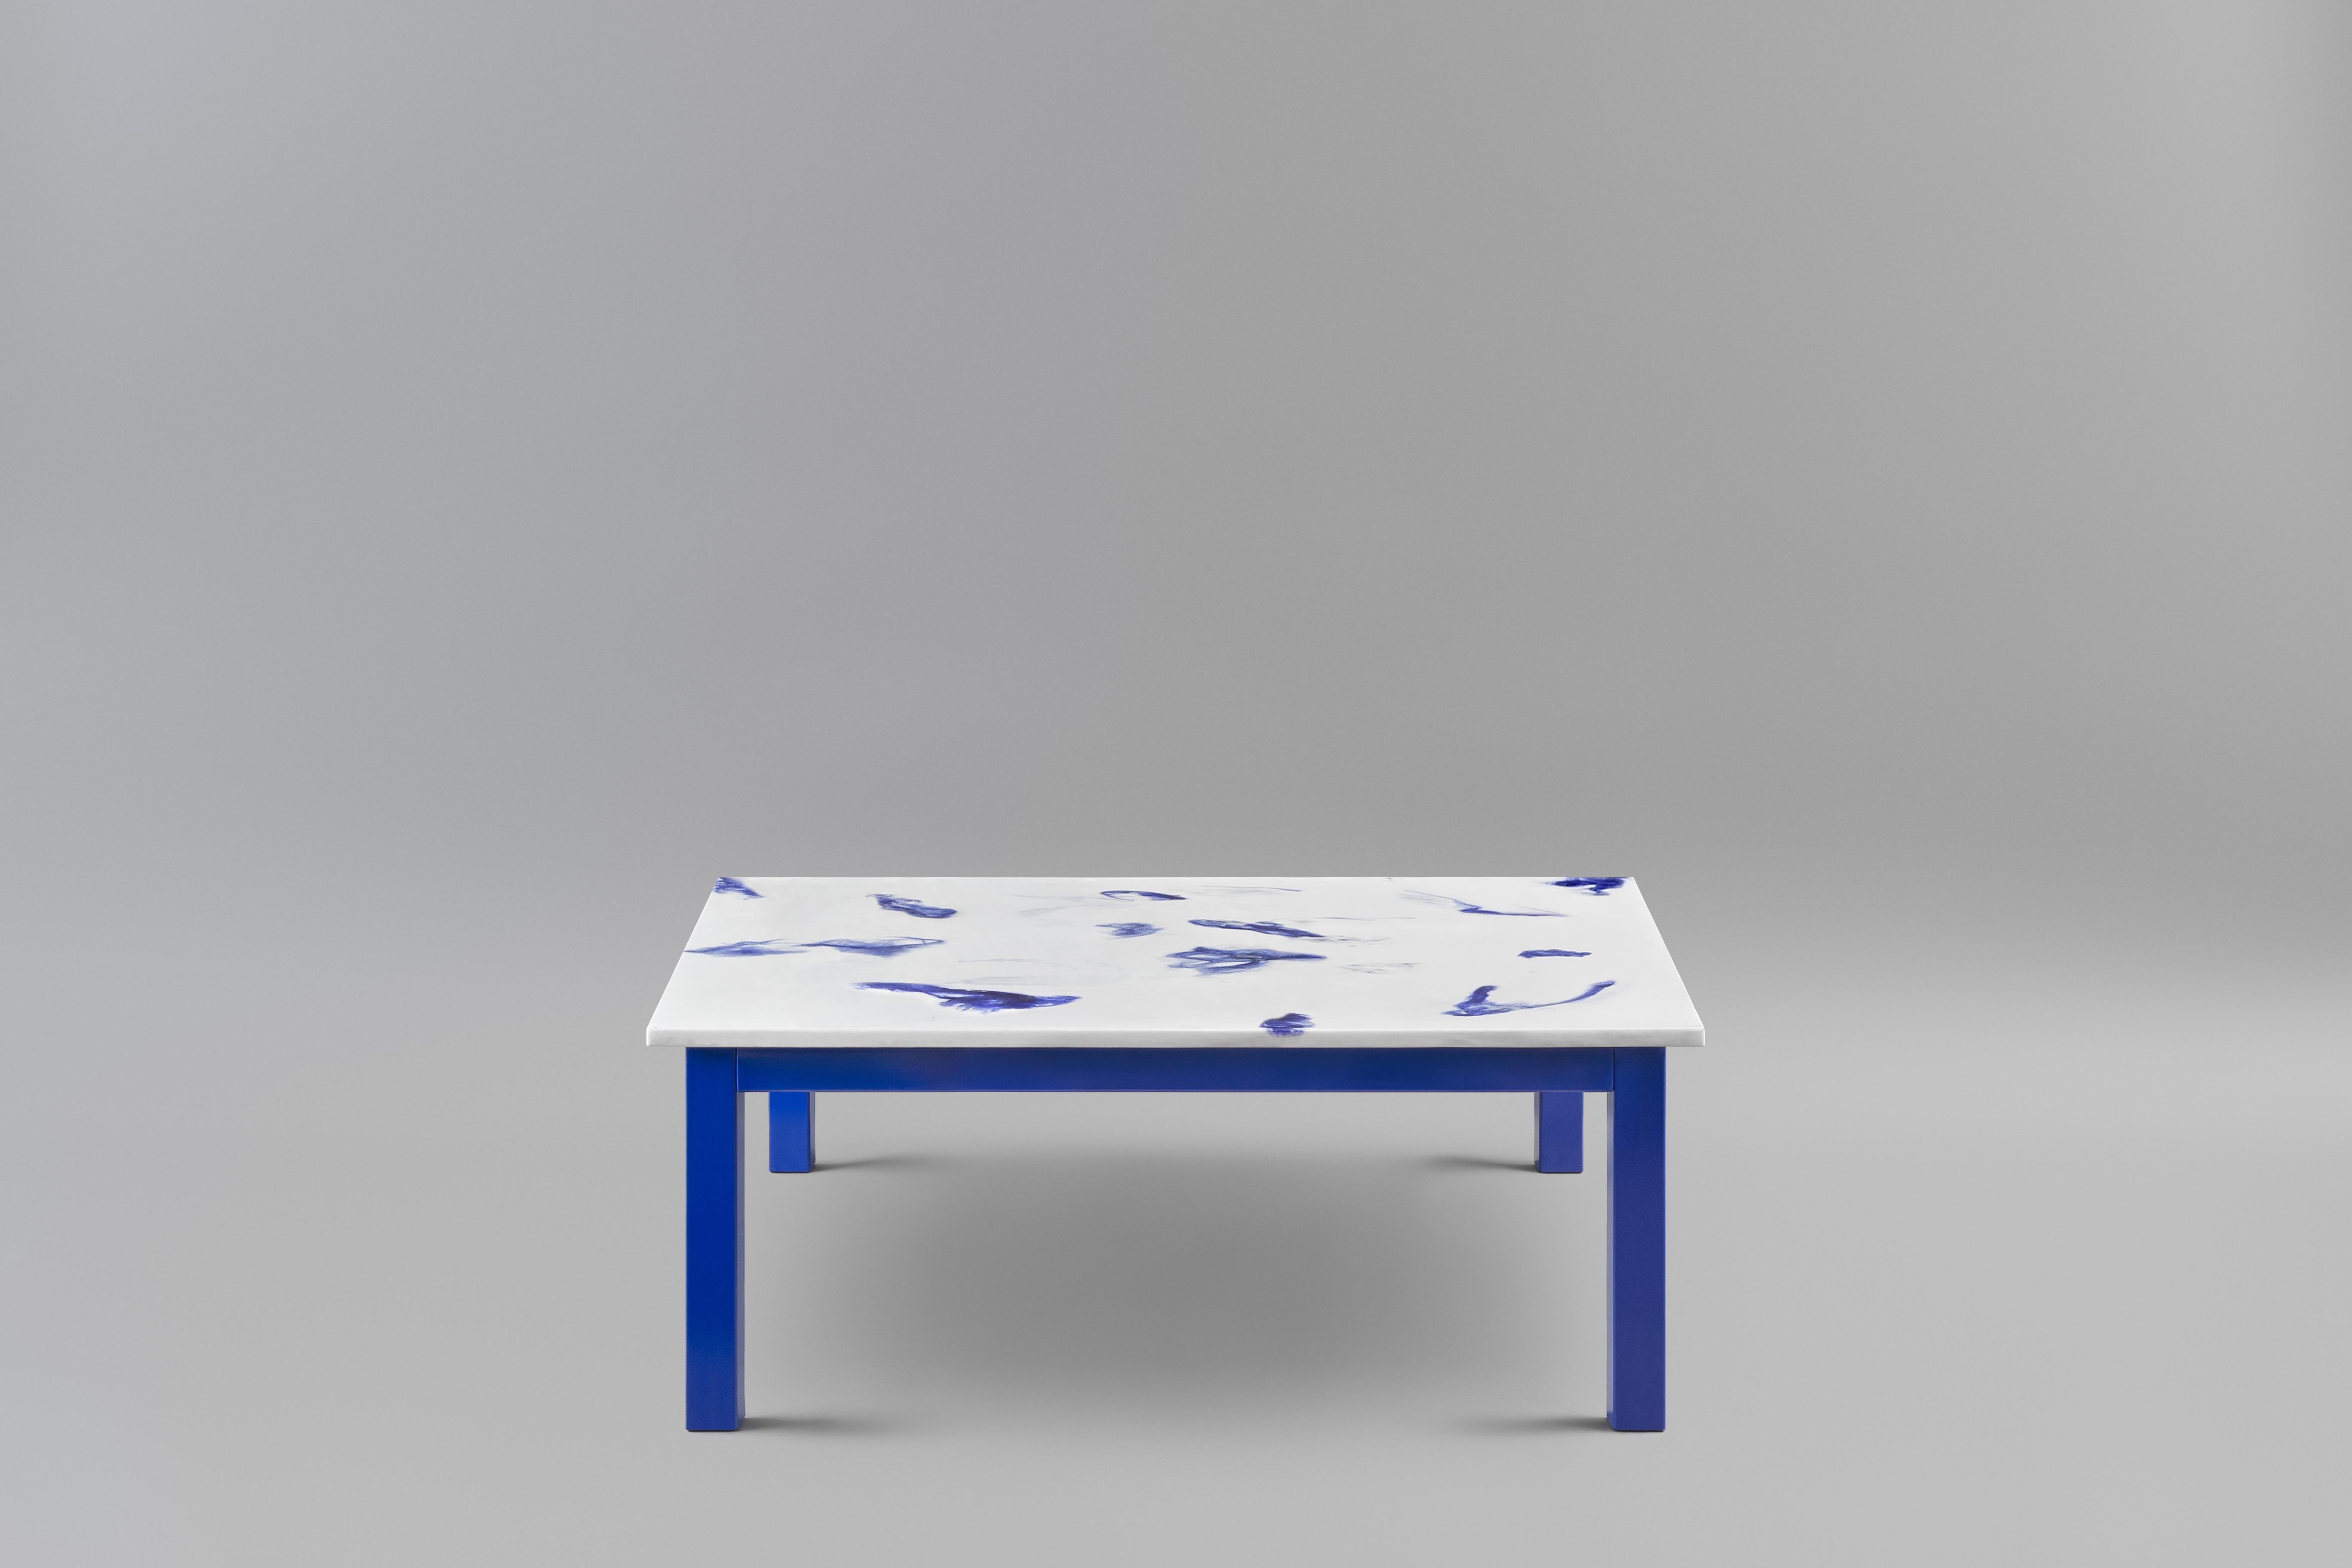 Der Fluent Couchtisch.
Die Tischplatte ist aus Marwoolus-Material mit blauen Wollfasern und weißem Carrara-Marmor-Pulversockel gefertigt.
Die Stahlrahmenkonstruktion ist blau pulverbeschichtet.

Informationen zum Material:
Marwoolus ist ein